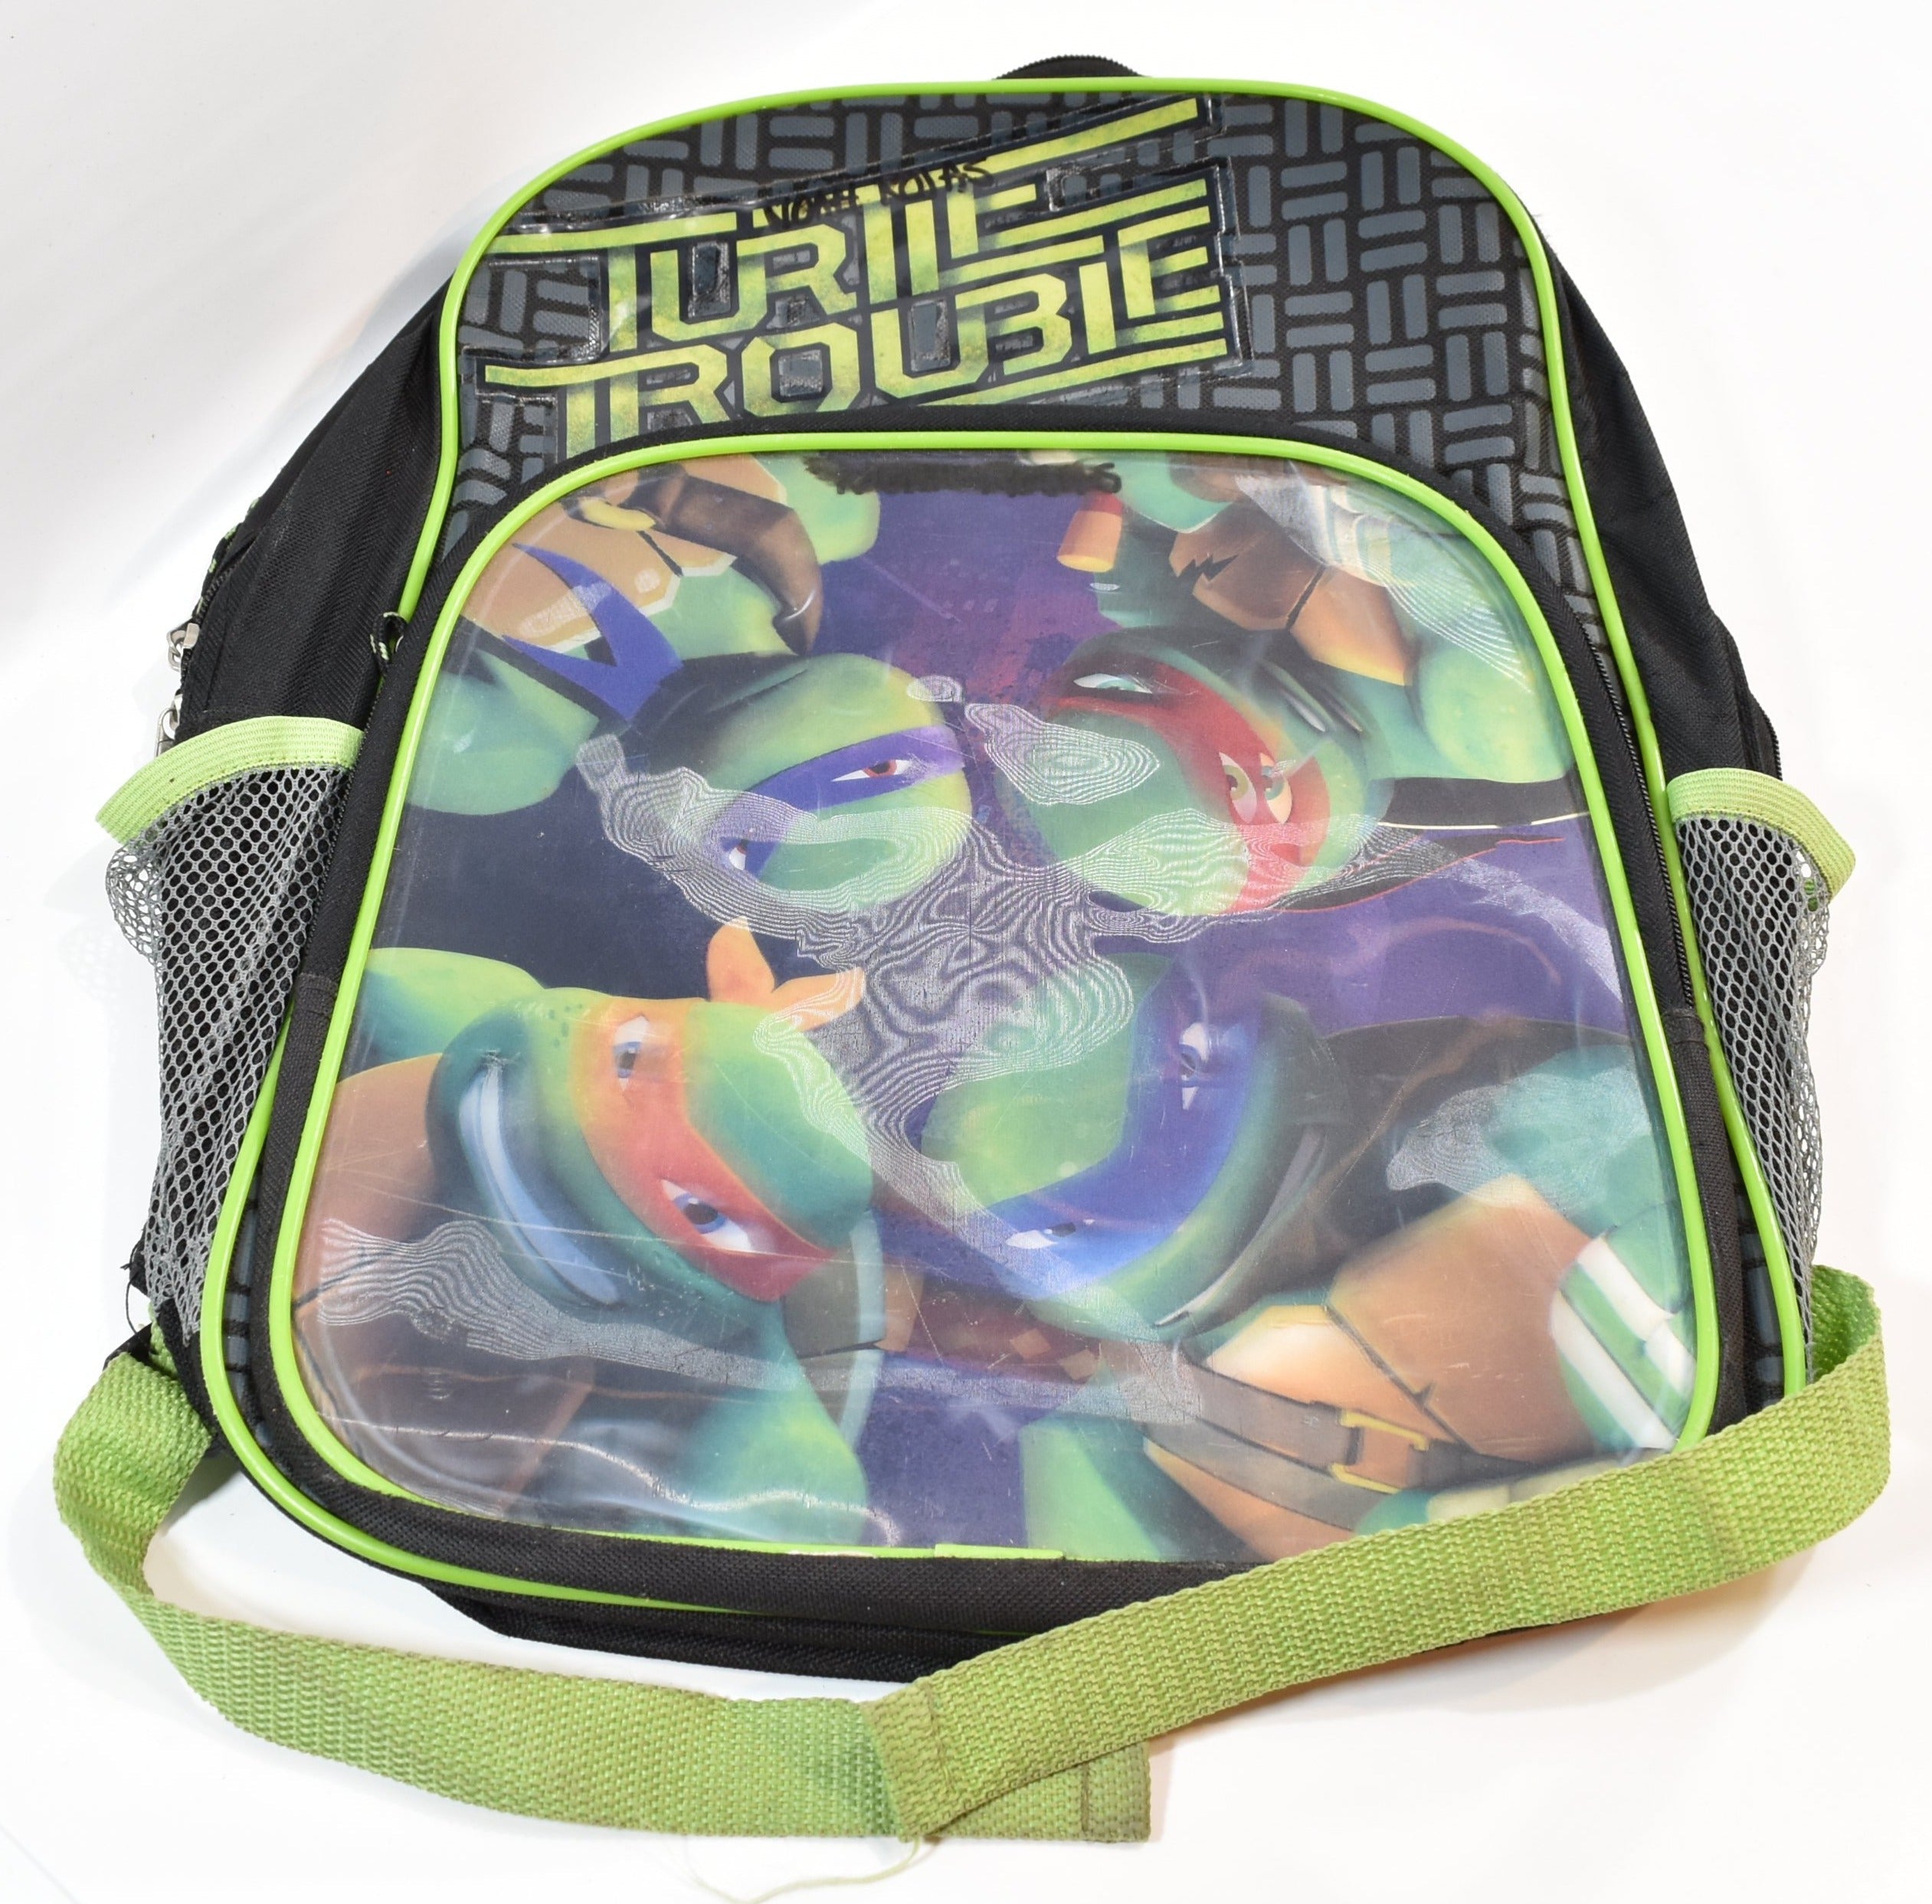 Ninja Turtles kids backpack used Kids School Backpack Book Bag